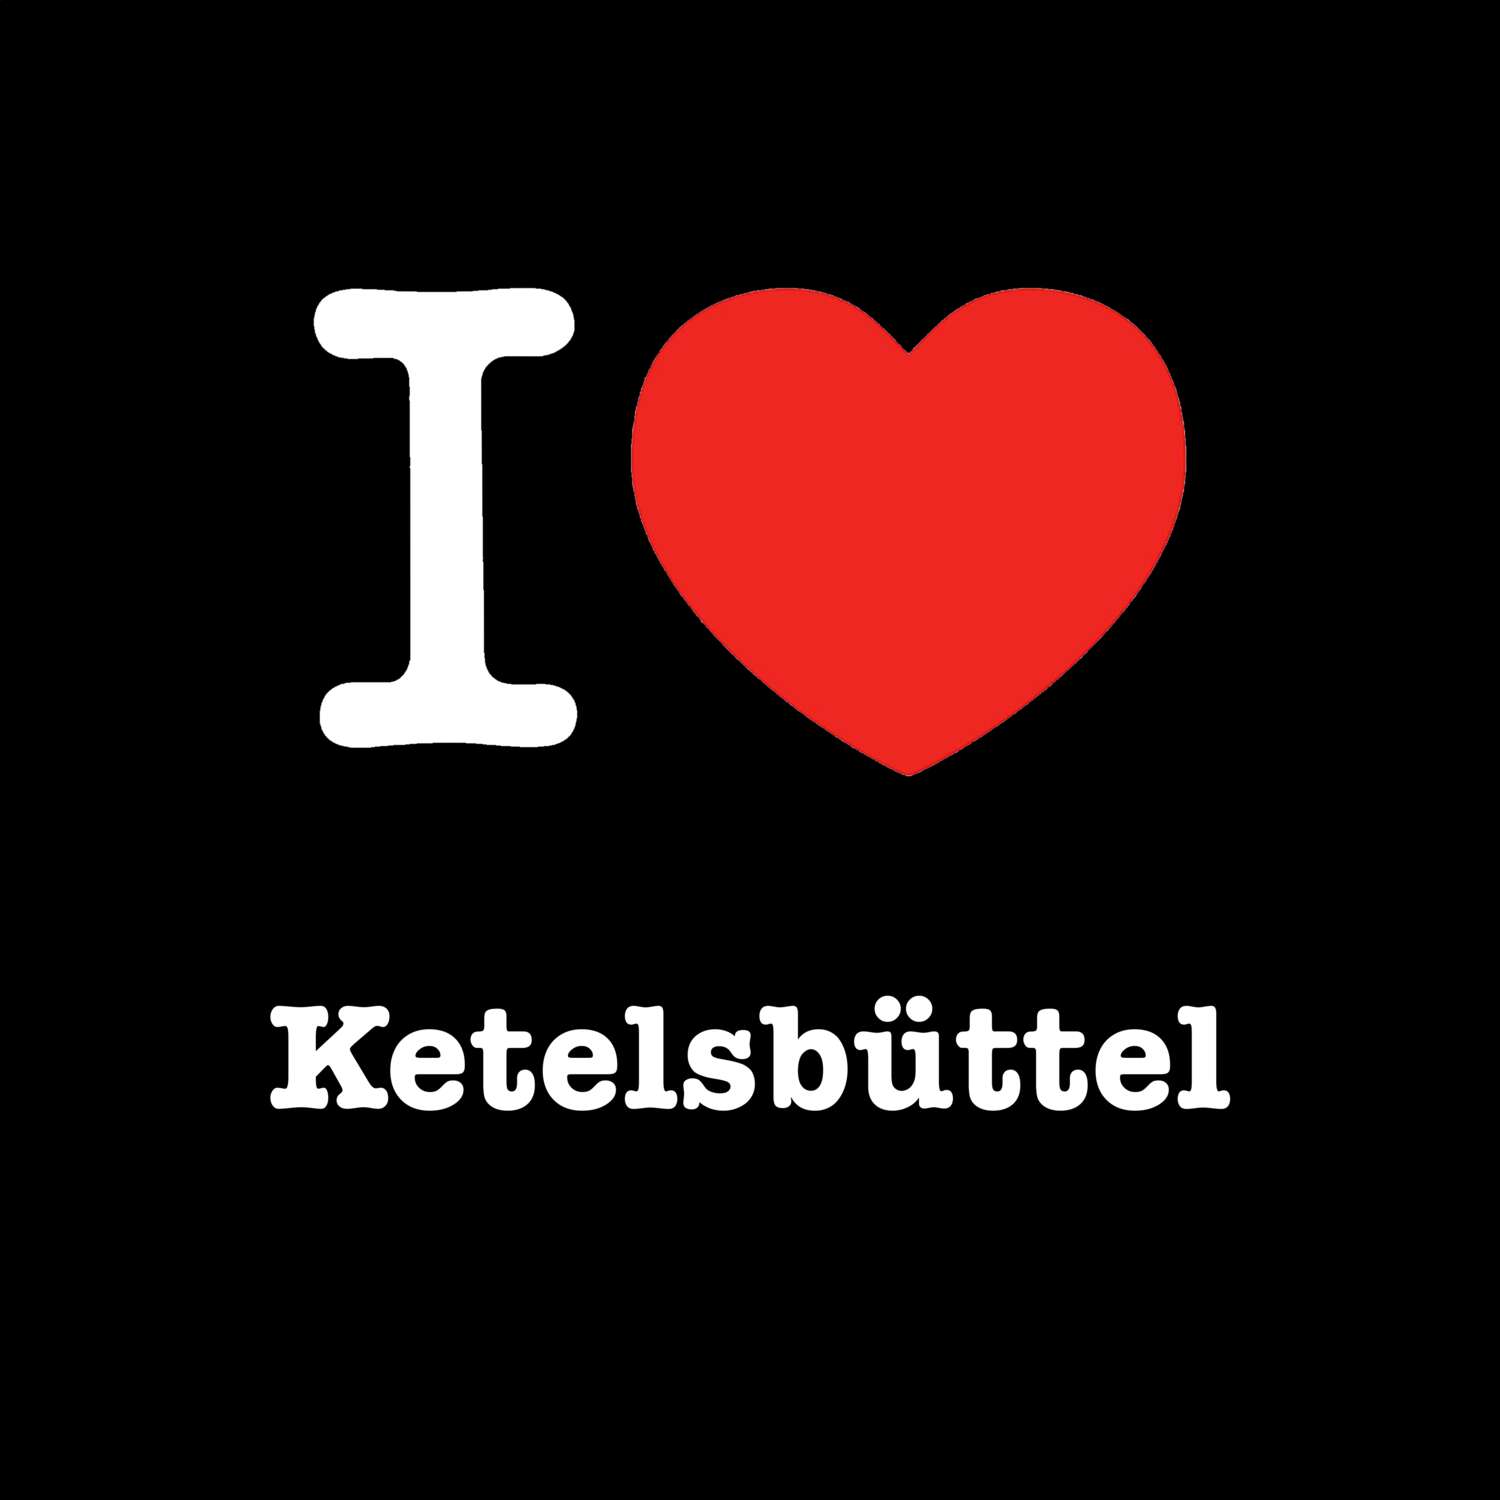 Ketelsbüttel T-Shirt »I love«